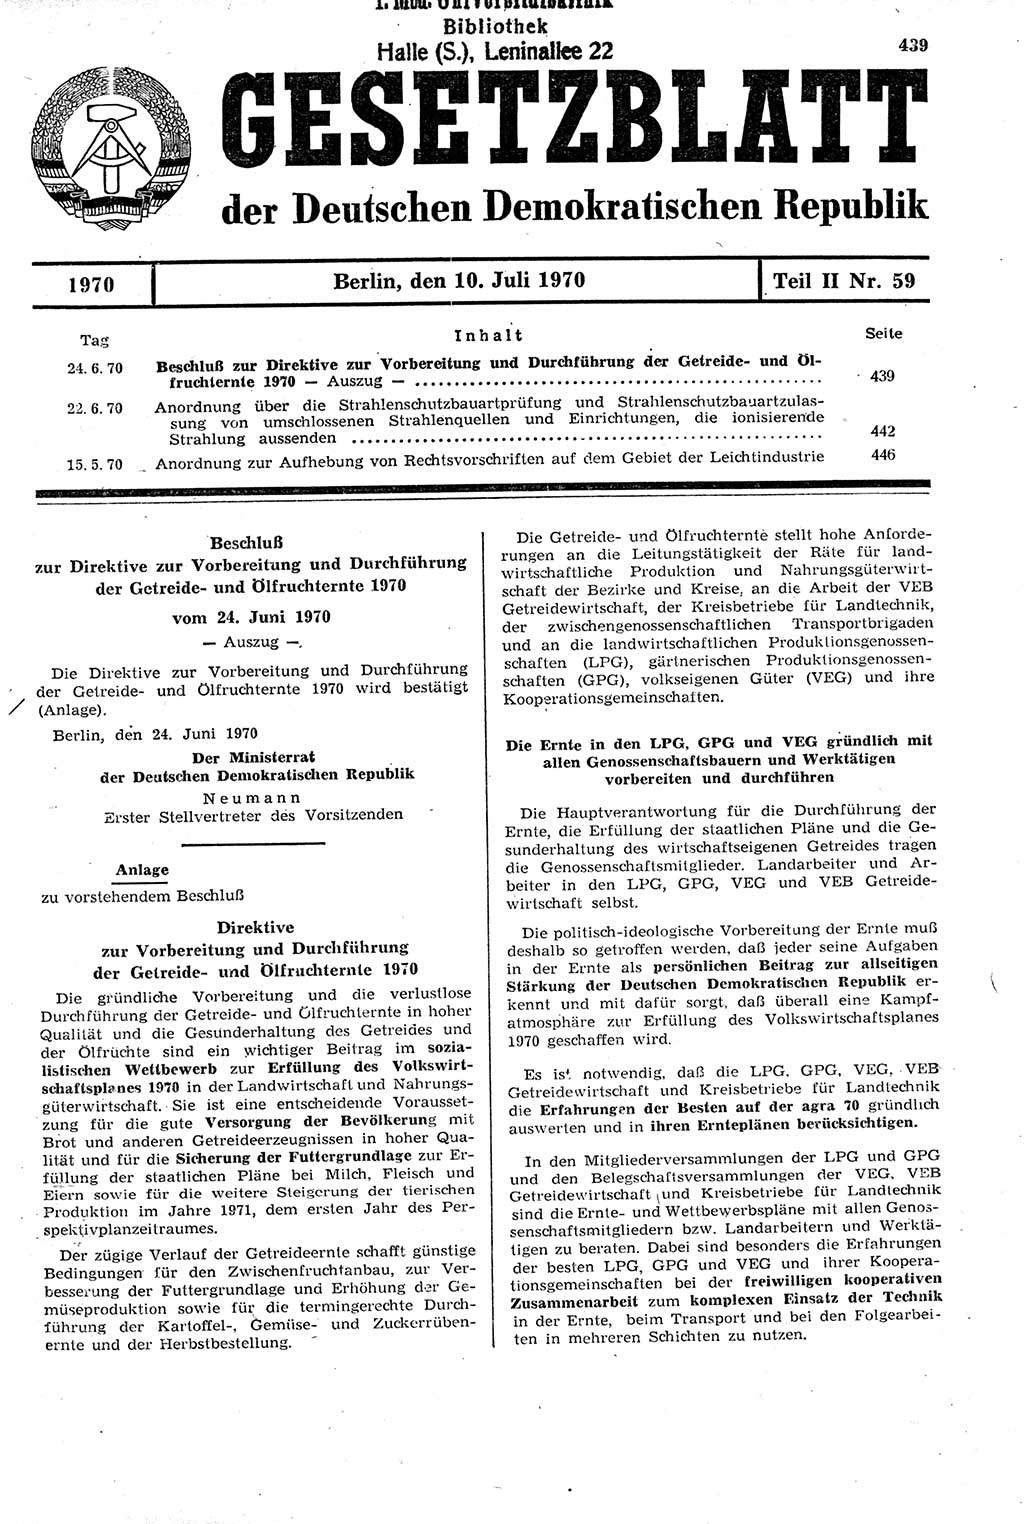 Gesetzblatt (GBl.) der Deutschen Demokratischen Republik (DDR) Teil ⅠⅠ 1970, Seite 439 (GBl. DDR ⅠⅠ 1970, S. 439)